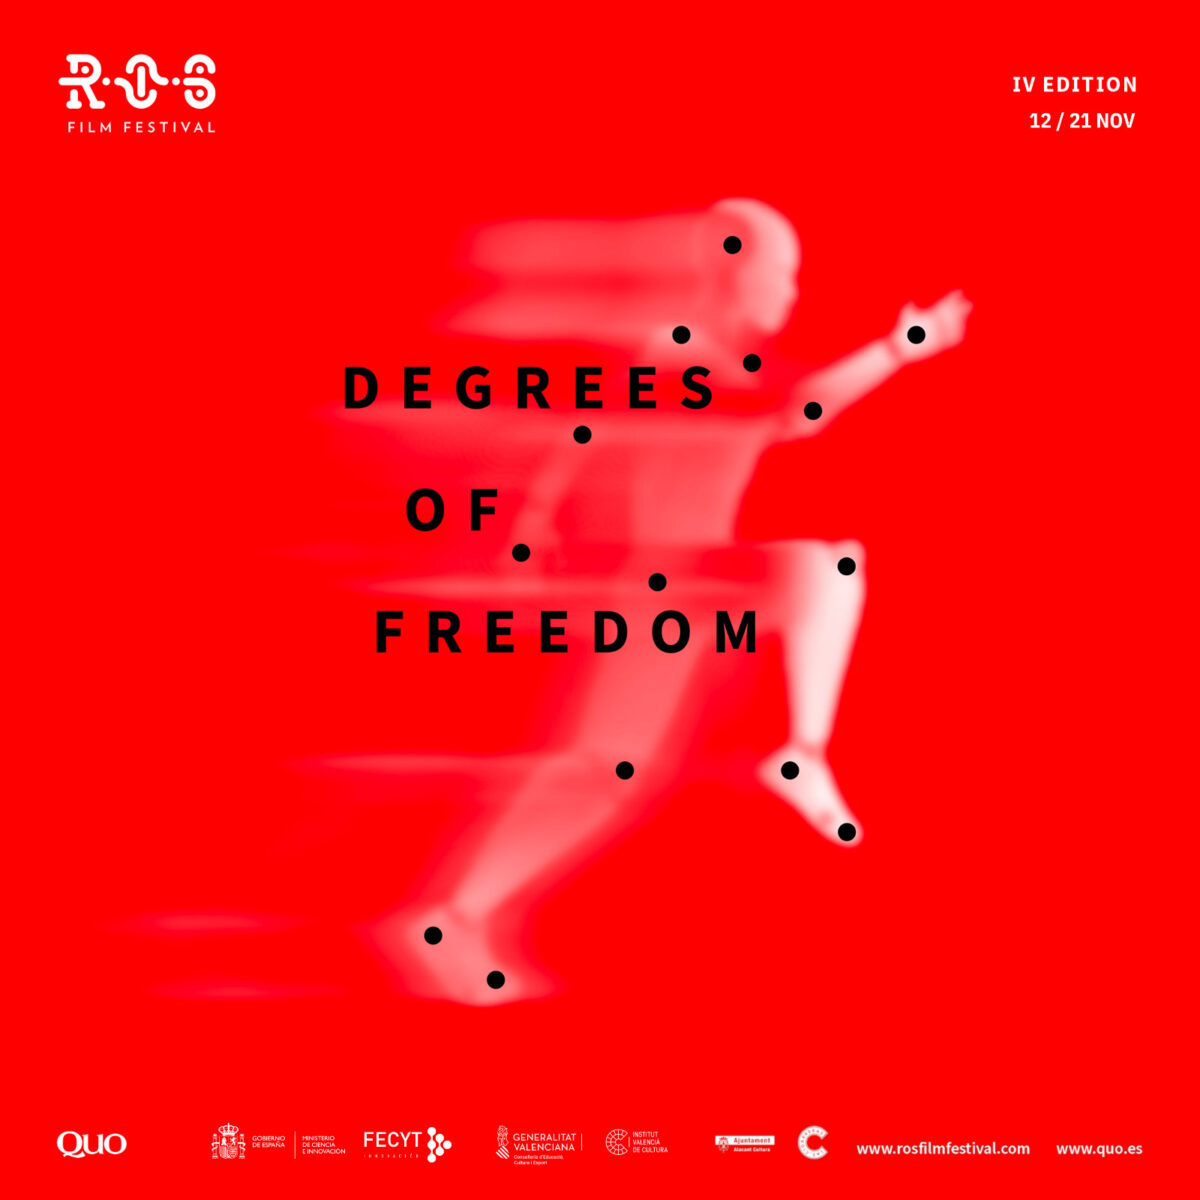 Grados de libertad, el sugerente lema de la cuarta edición del ROS Film Festival